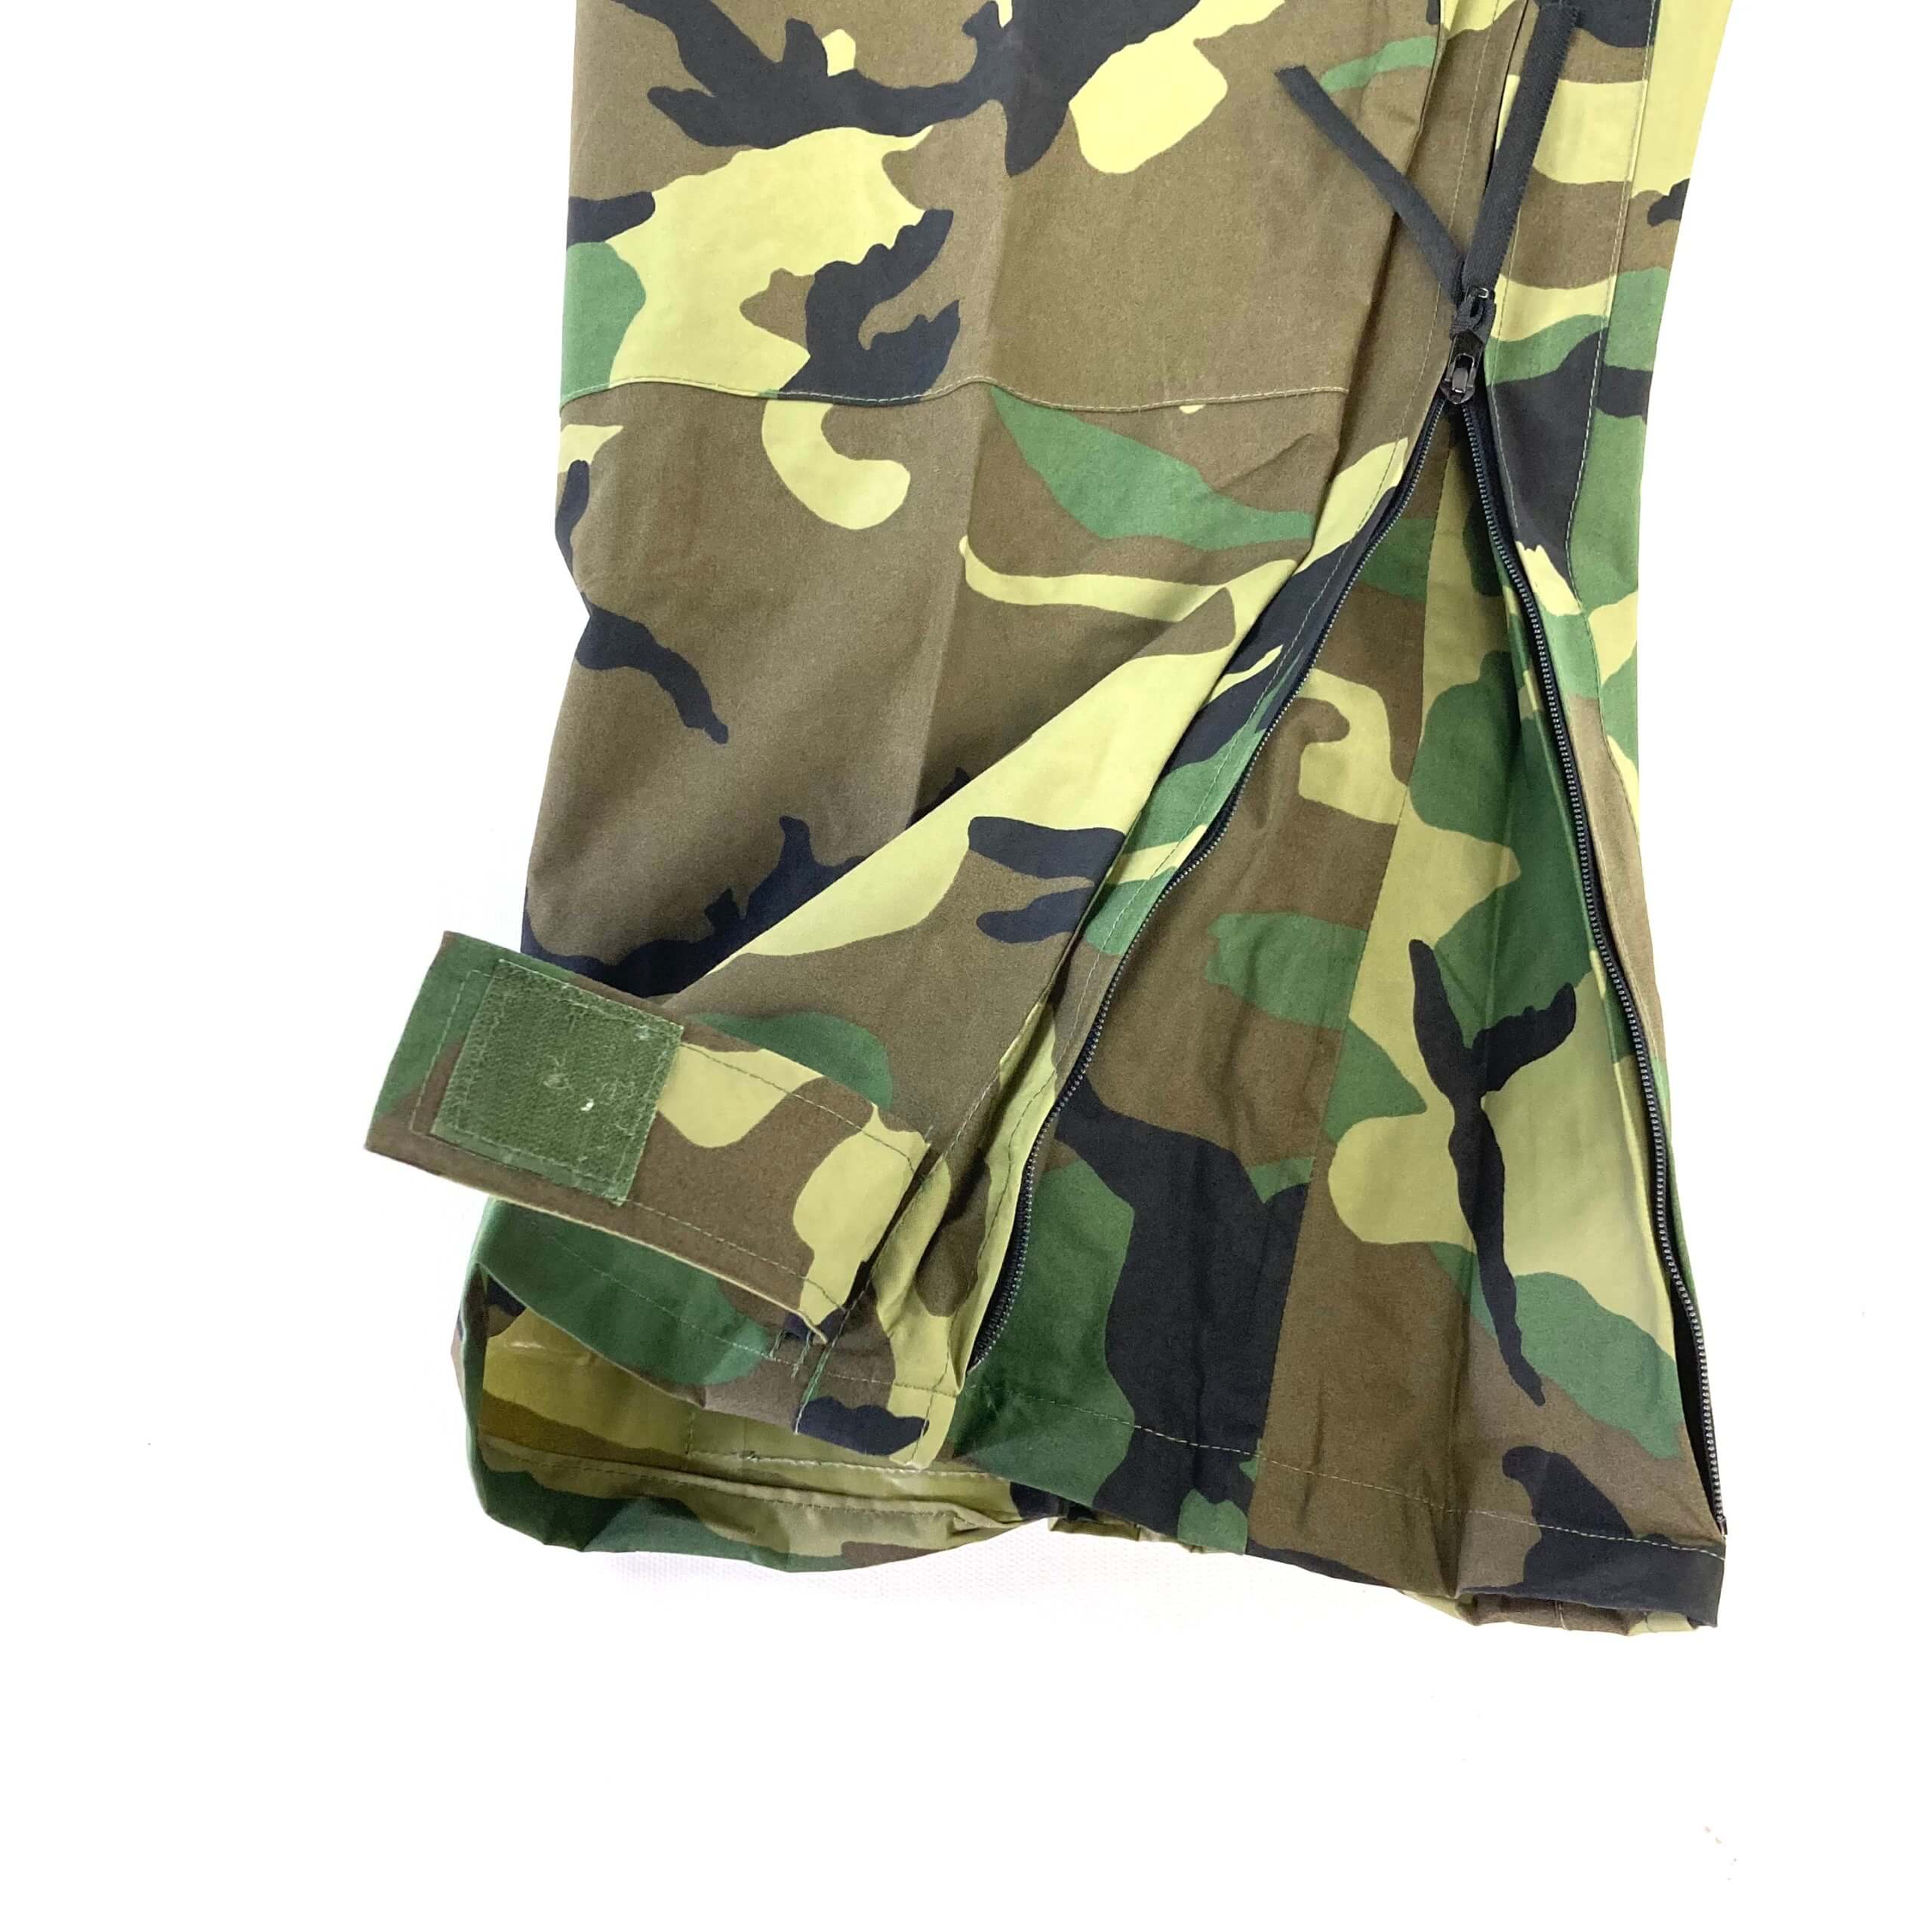 US Army Improved Rain Suit Pants, Woodland - Venture Surplus - USGI